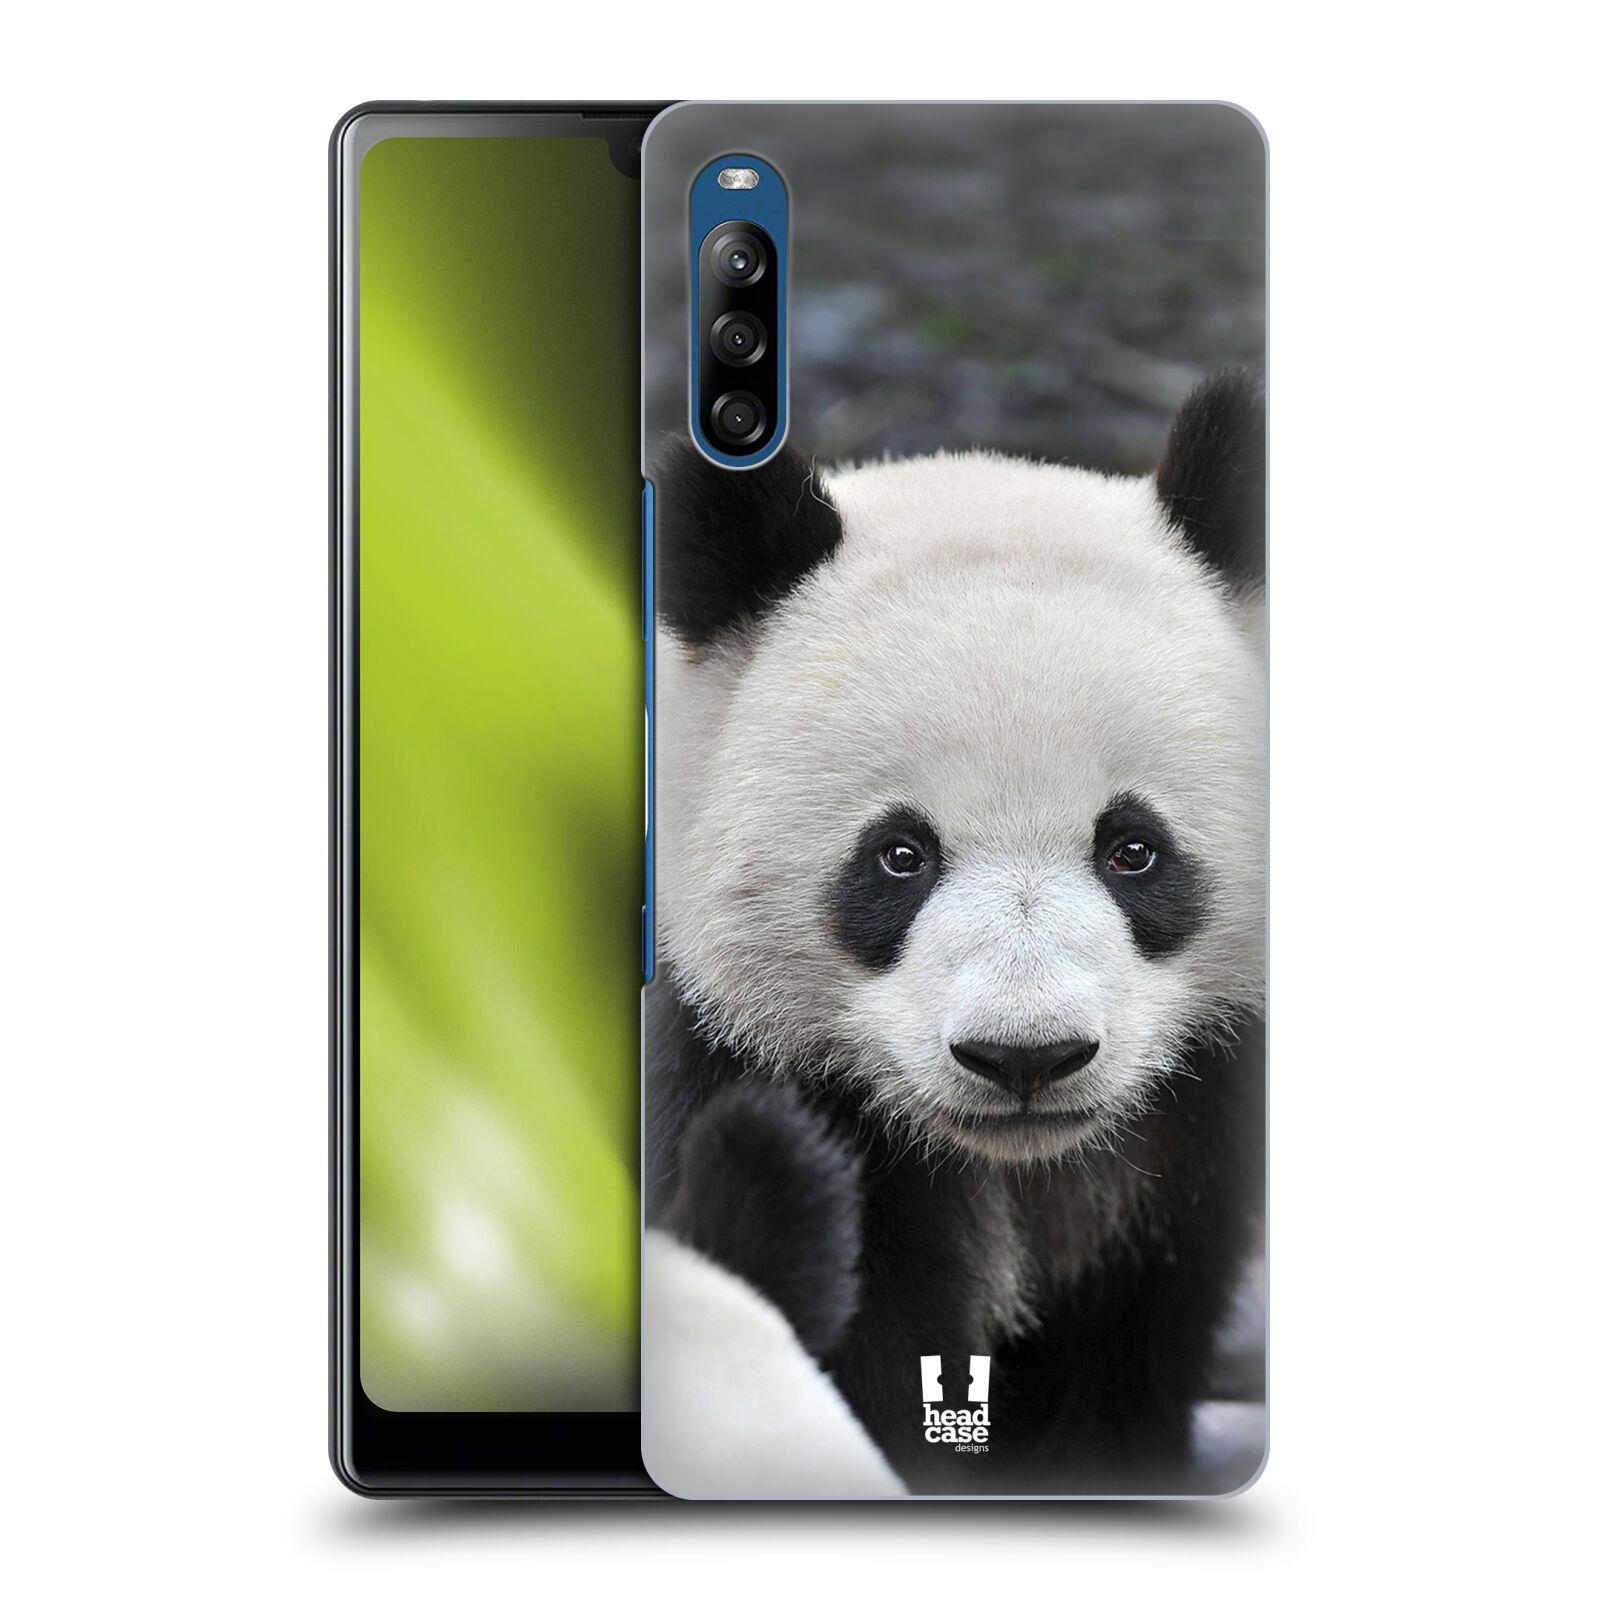 Zadní obal pro mobil Sony Xperia L4 - HEAD CASE - Svět zvířat medvěd panda